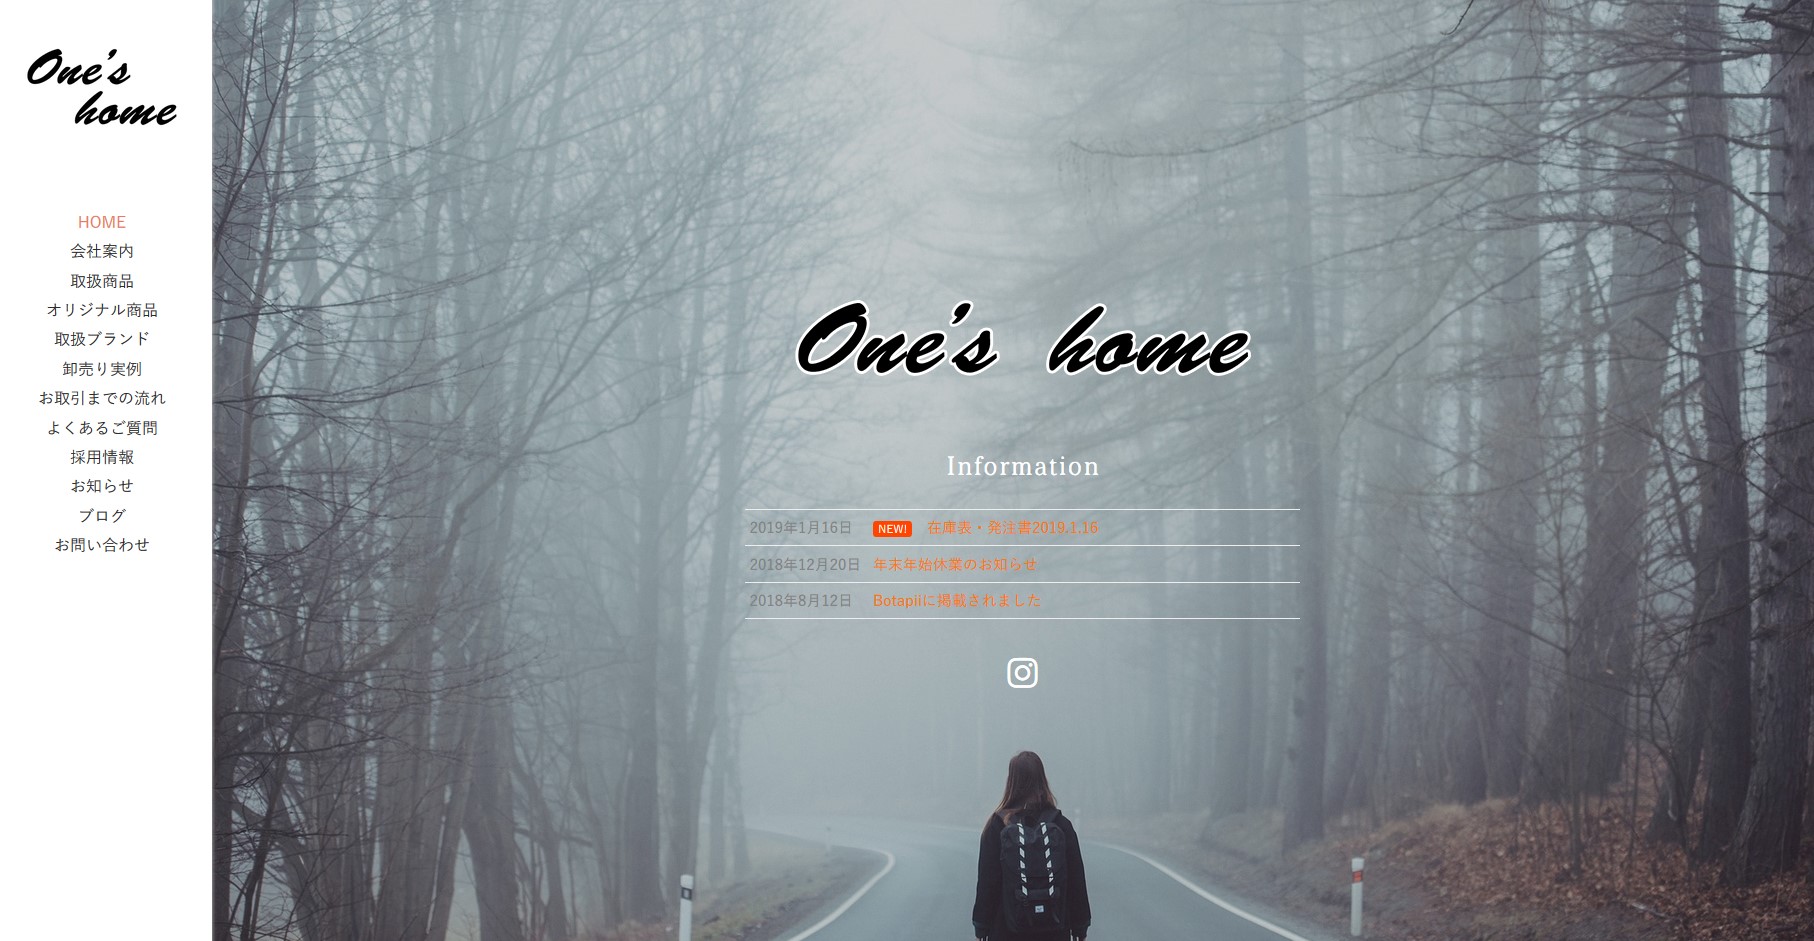 SnapCrab NoName 2019 1 31 10 41 14 No 00 - SEO対策結果報告あり2019.07｜衣類・雑貨の卸売り販売『One's home(ワンズホーム）』様ホームページを再度リニューアル致しました